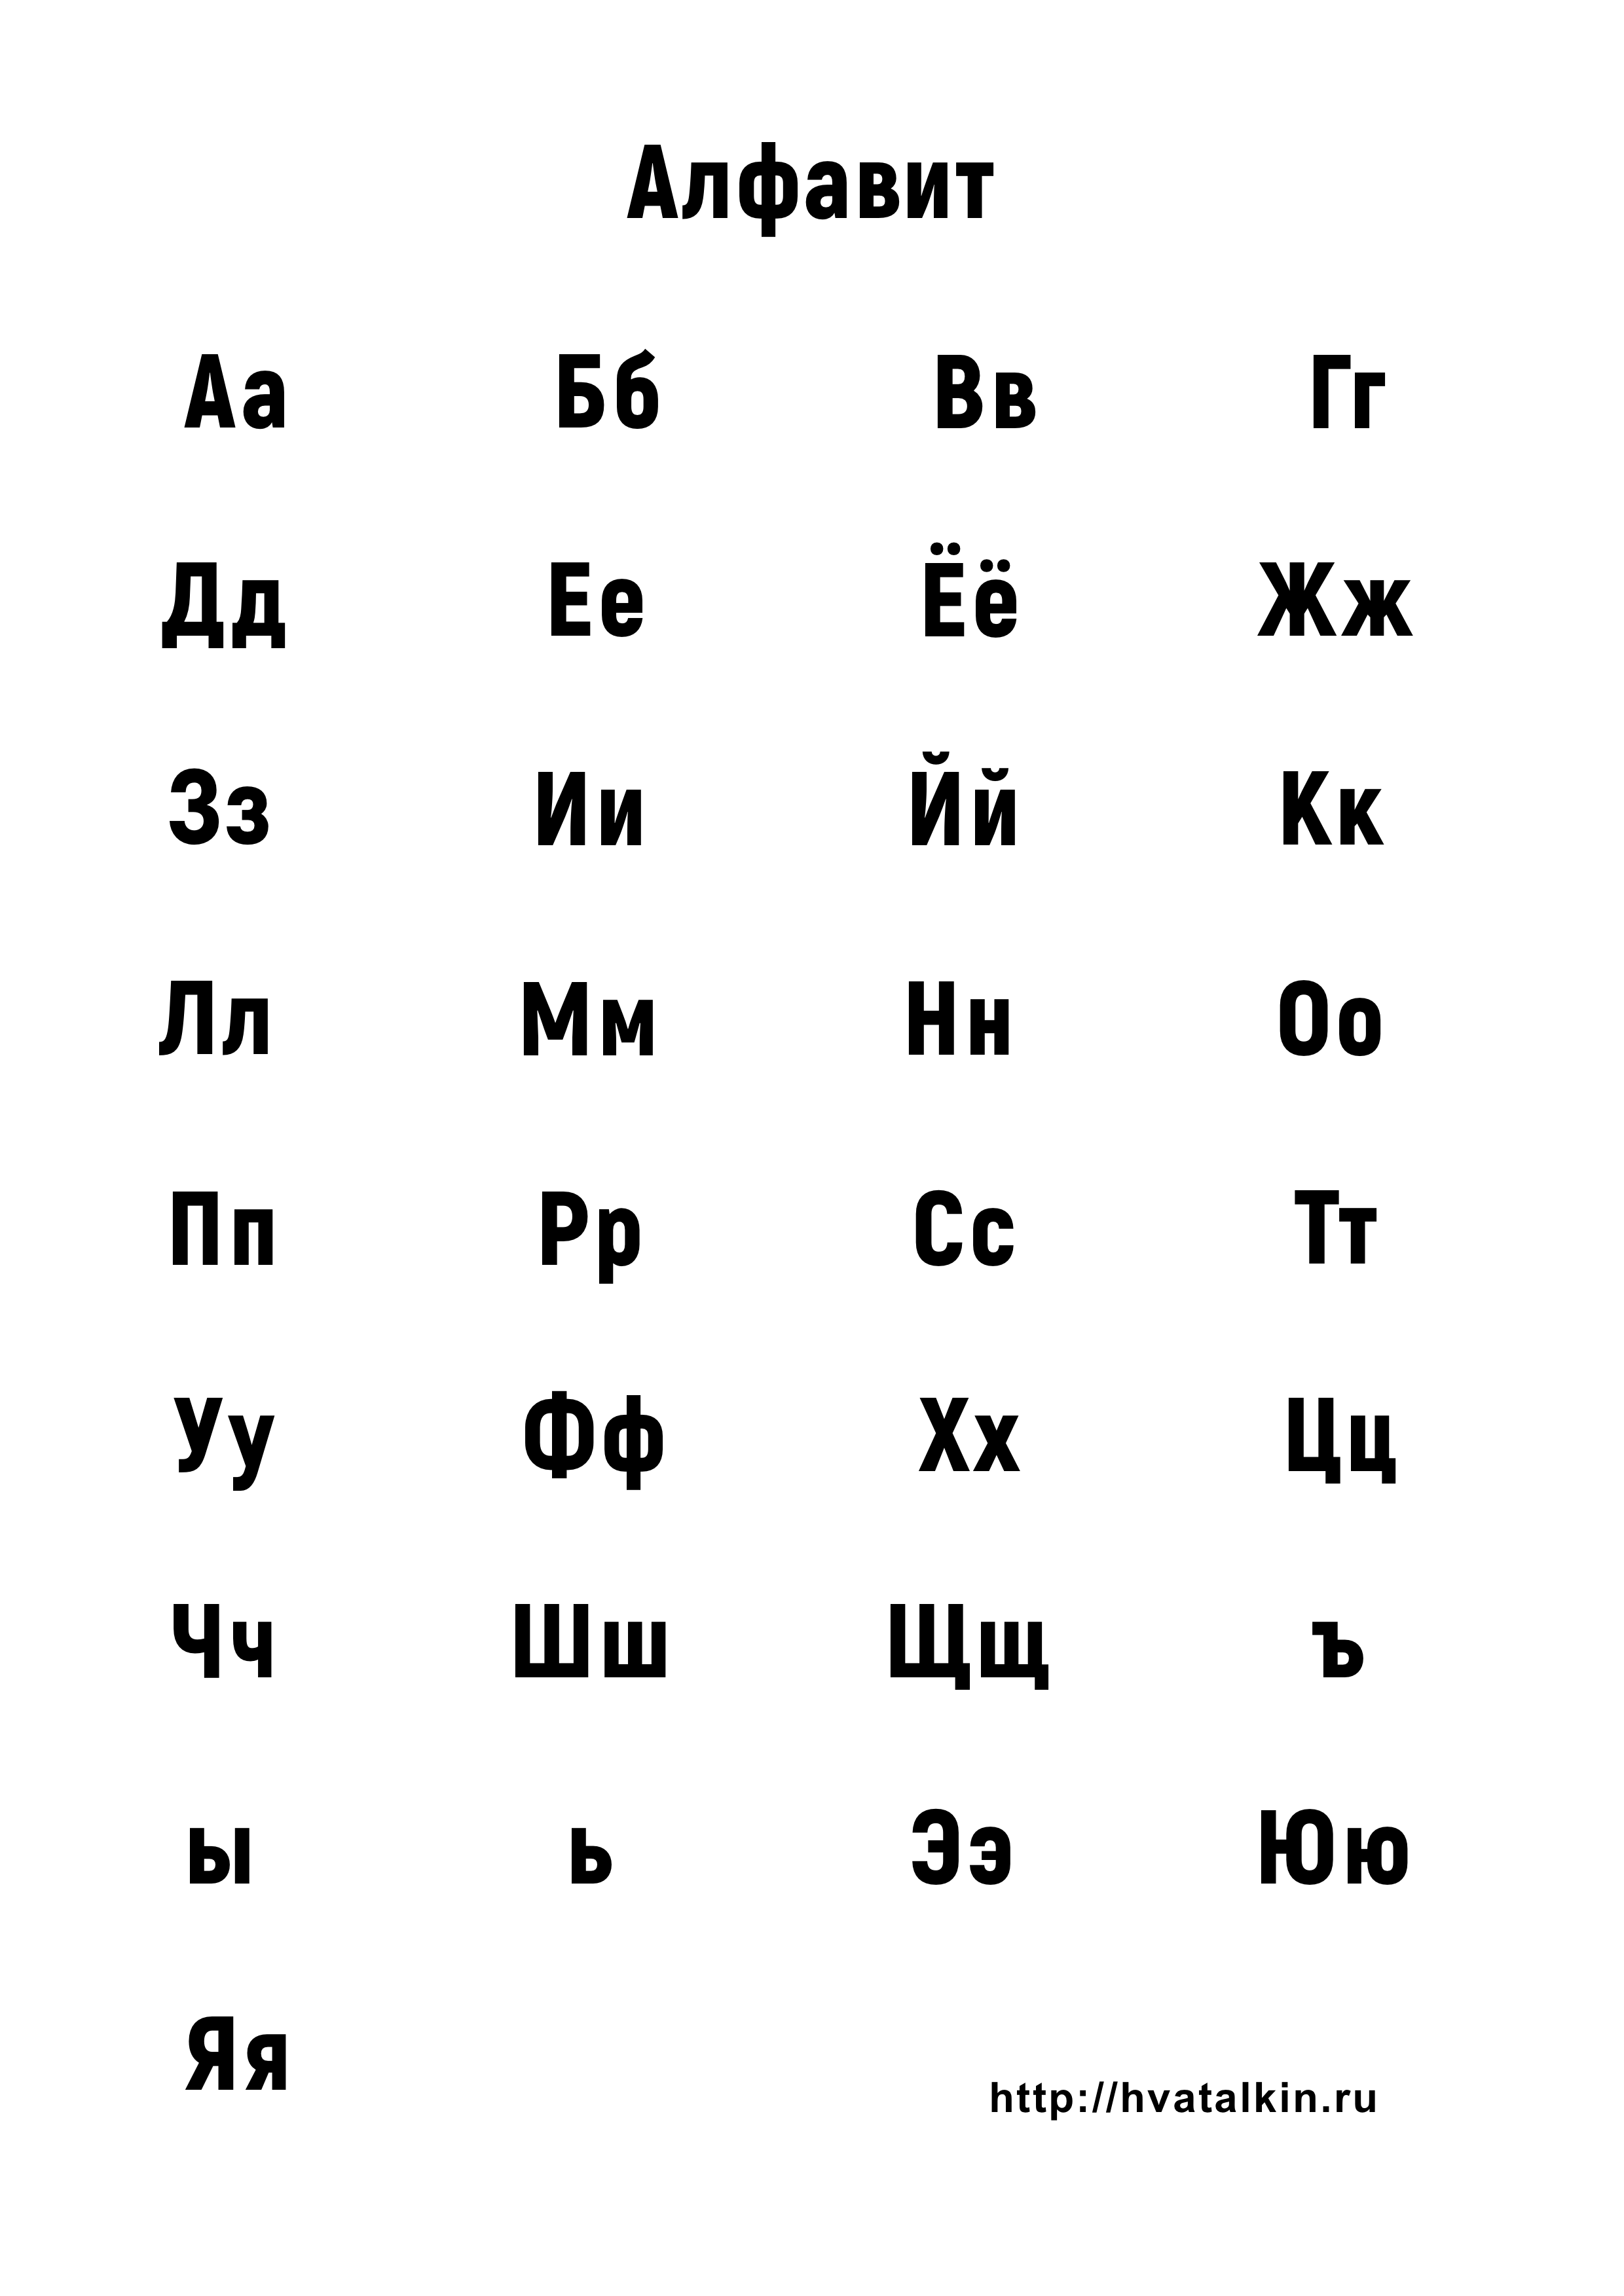 Русский алфавит от а до я по порядку